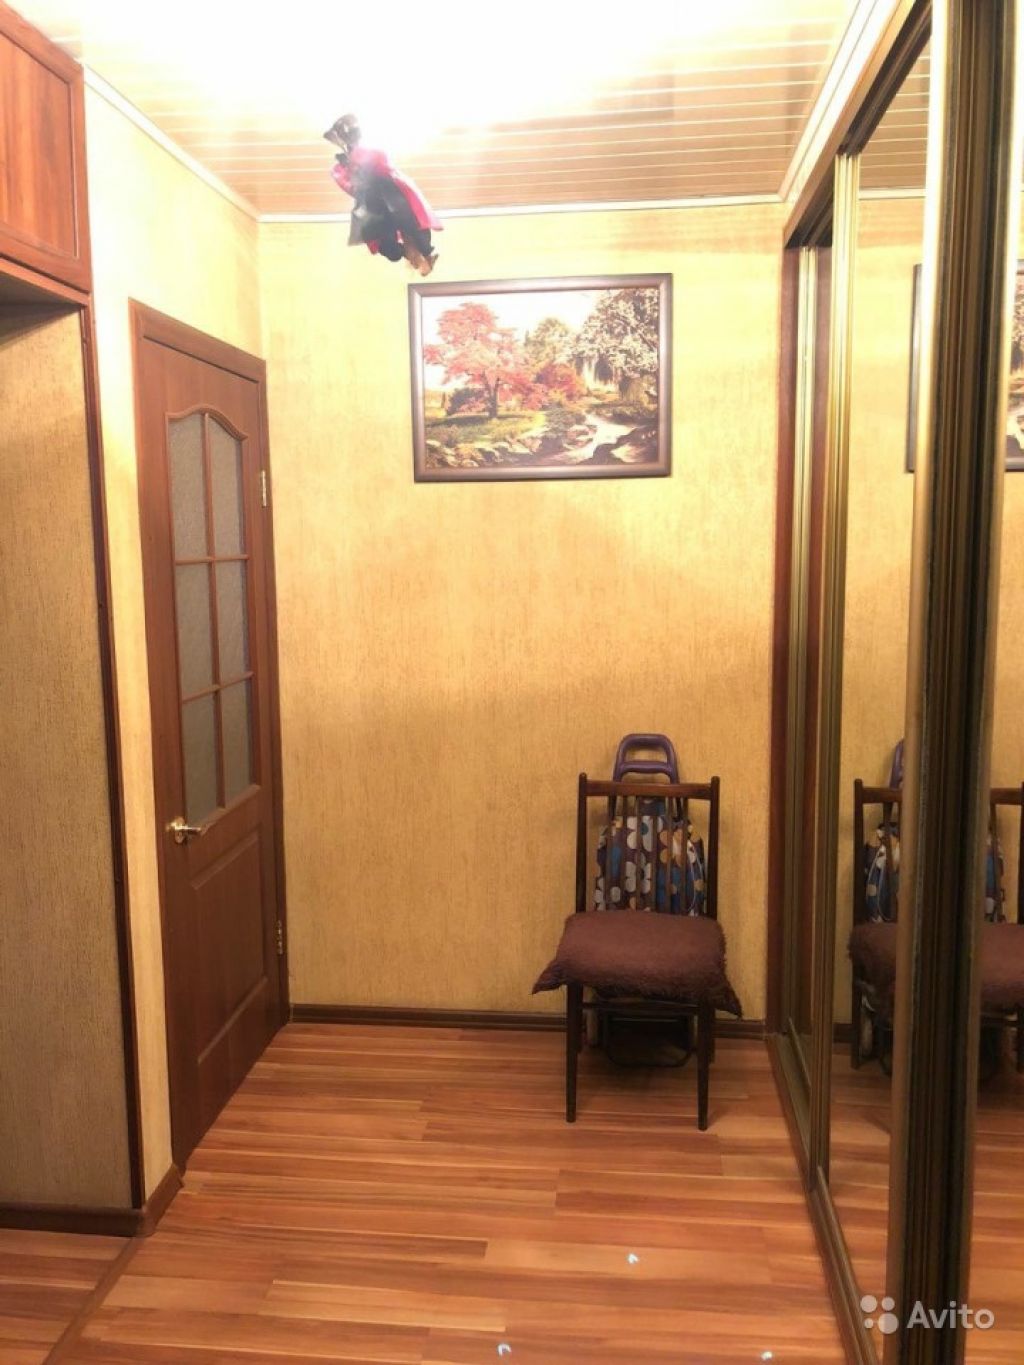 Продам квартиру 1-к квартира 39 м² на 1 этаже 12-этажного блочного дома в Москве. Фото 1